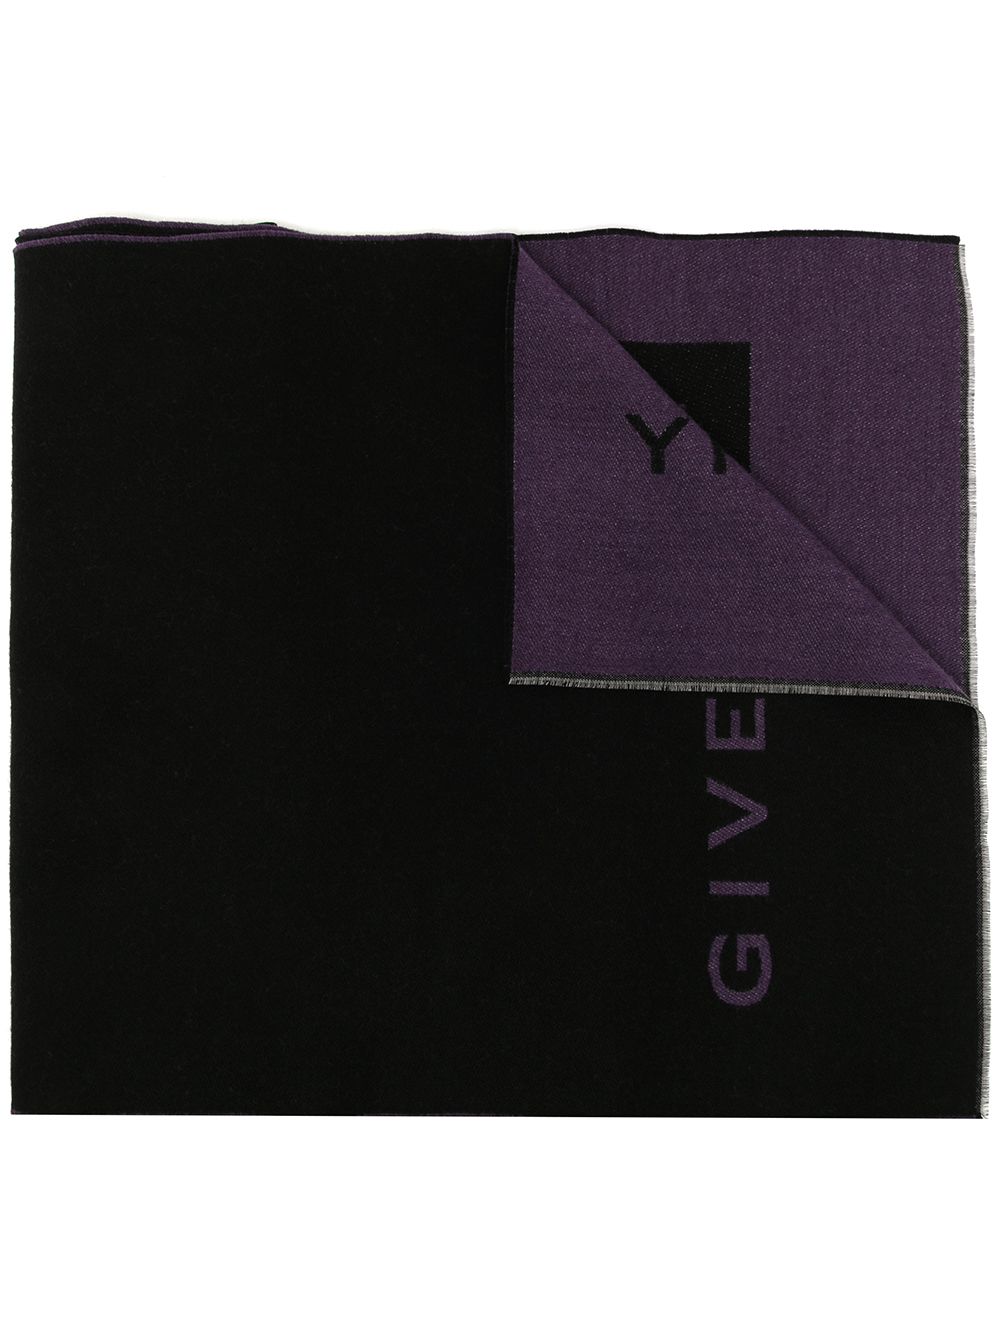 фото Givenchy шарф с логотипом 4g